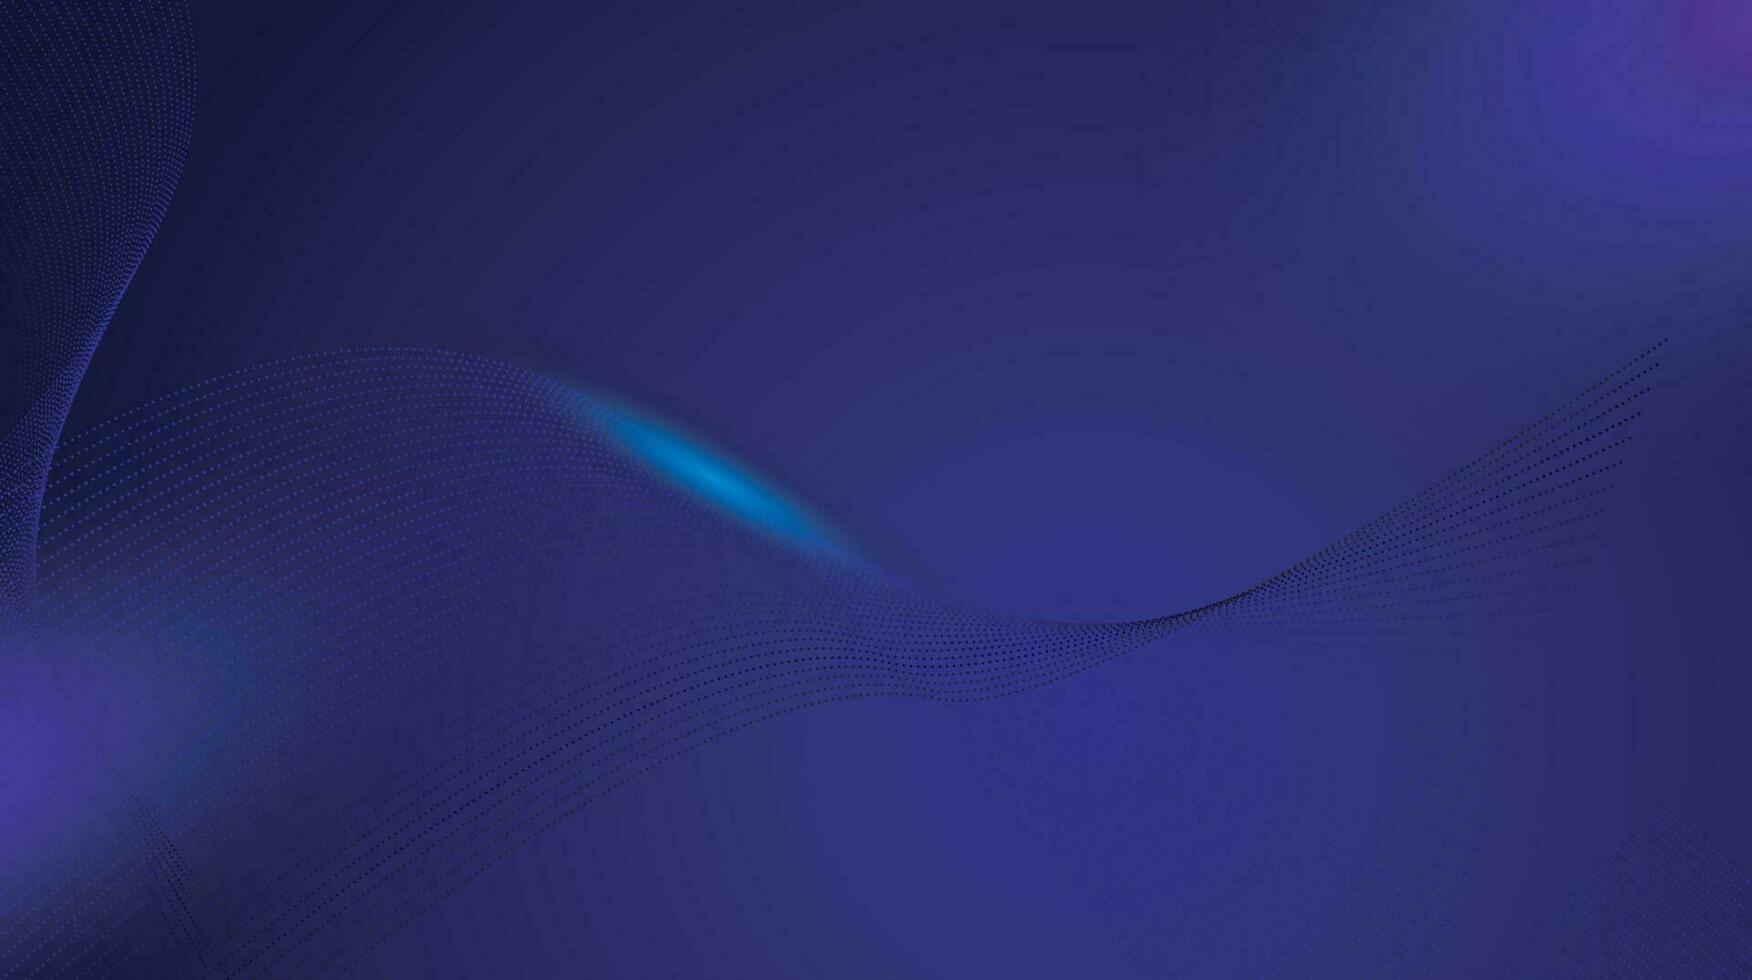 Prämie Hintergrund Design mit diagonal gestalten dunkel Blau Linie Muster. Vektor horizontal Vorlage zum Digital Prämie Geschäft Banner, zeitgenössisch formal Einladung, Luxus Gutschein.